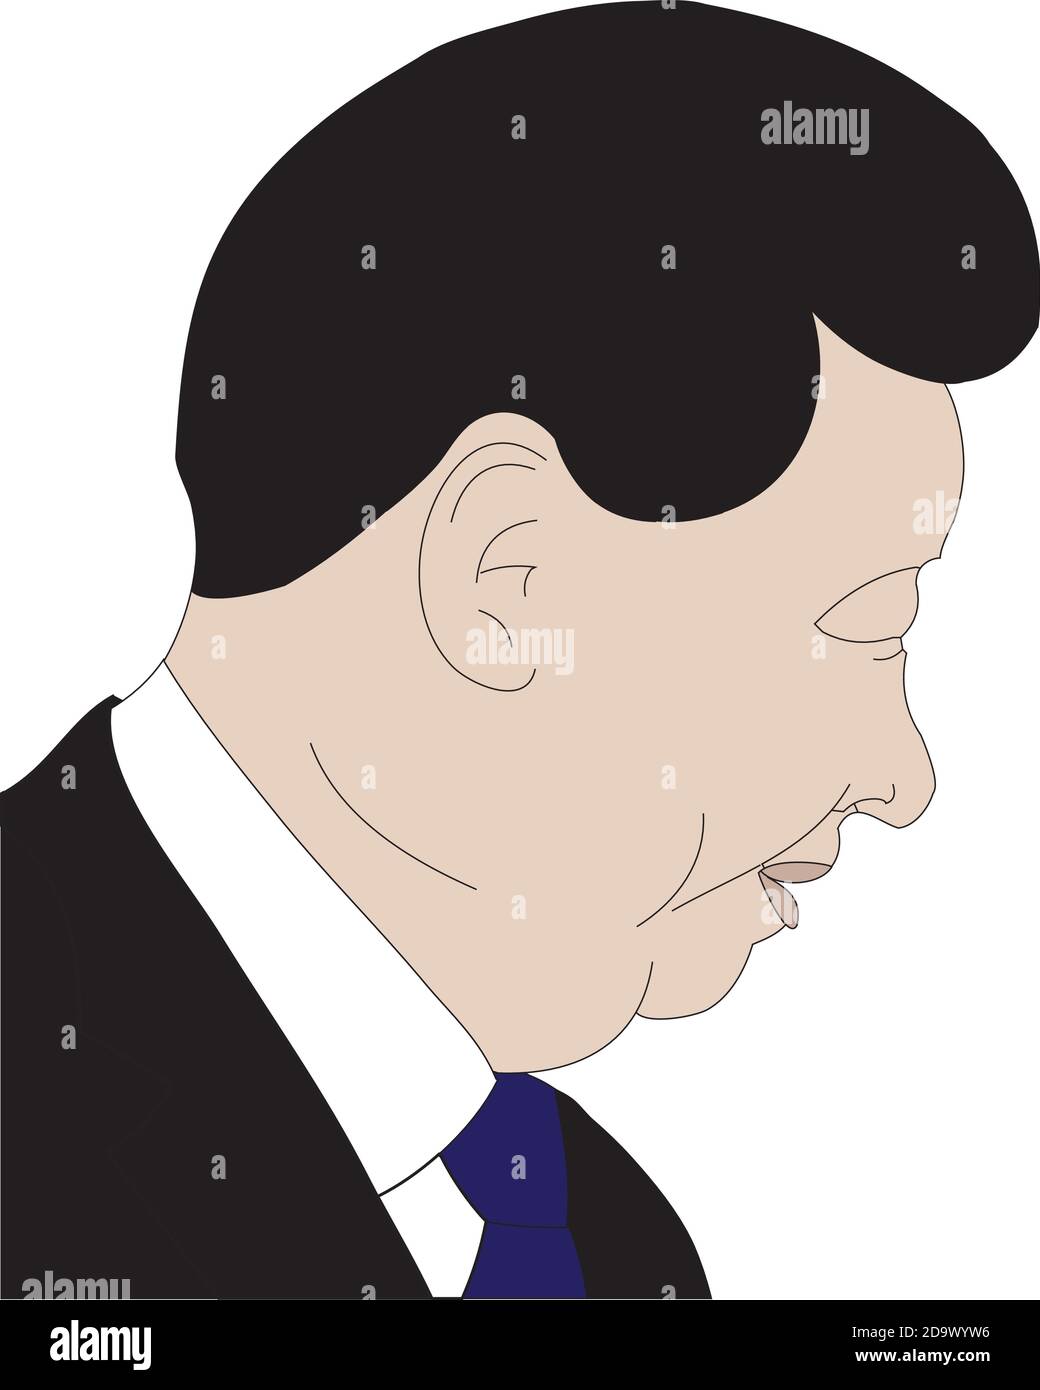 Illustrazione vettoriale dei leader mondiali di Xi Jinping - leader della Cina, Segretario Generale del Partito Comunista Cinese (CCP), 2020, profilo laterale Illustrazione Vettoriale